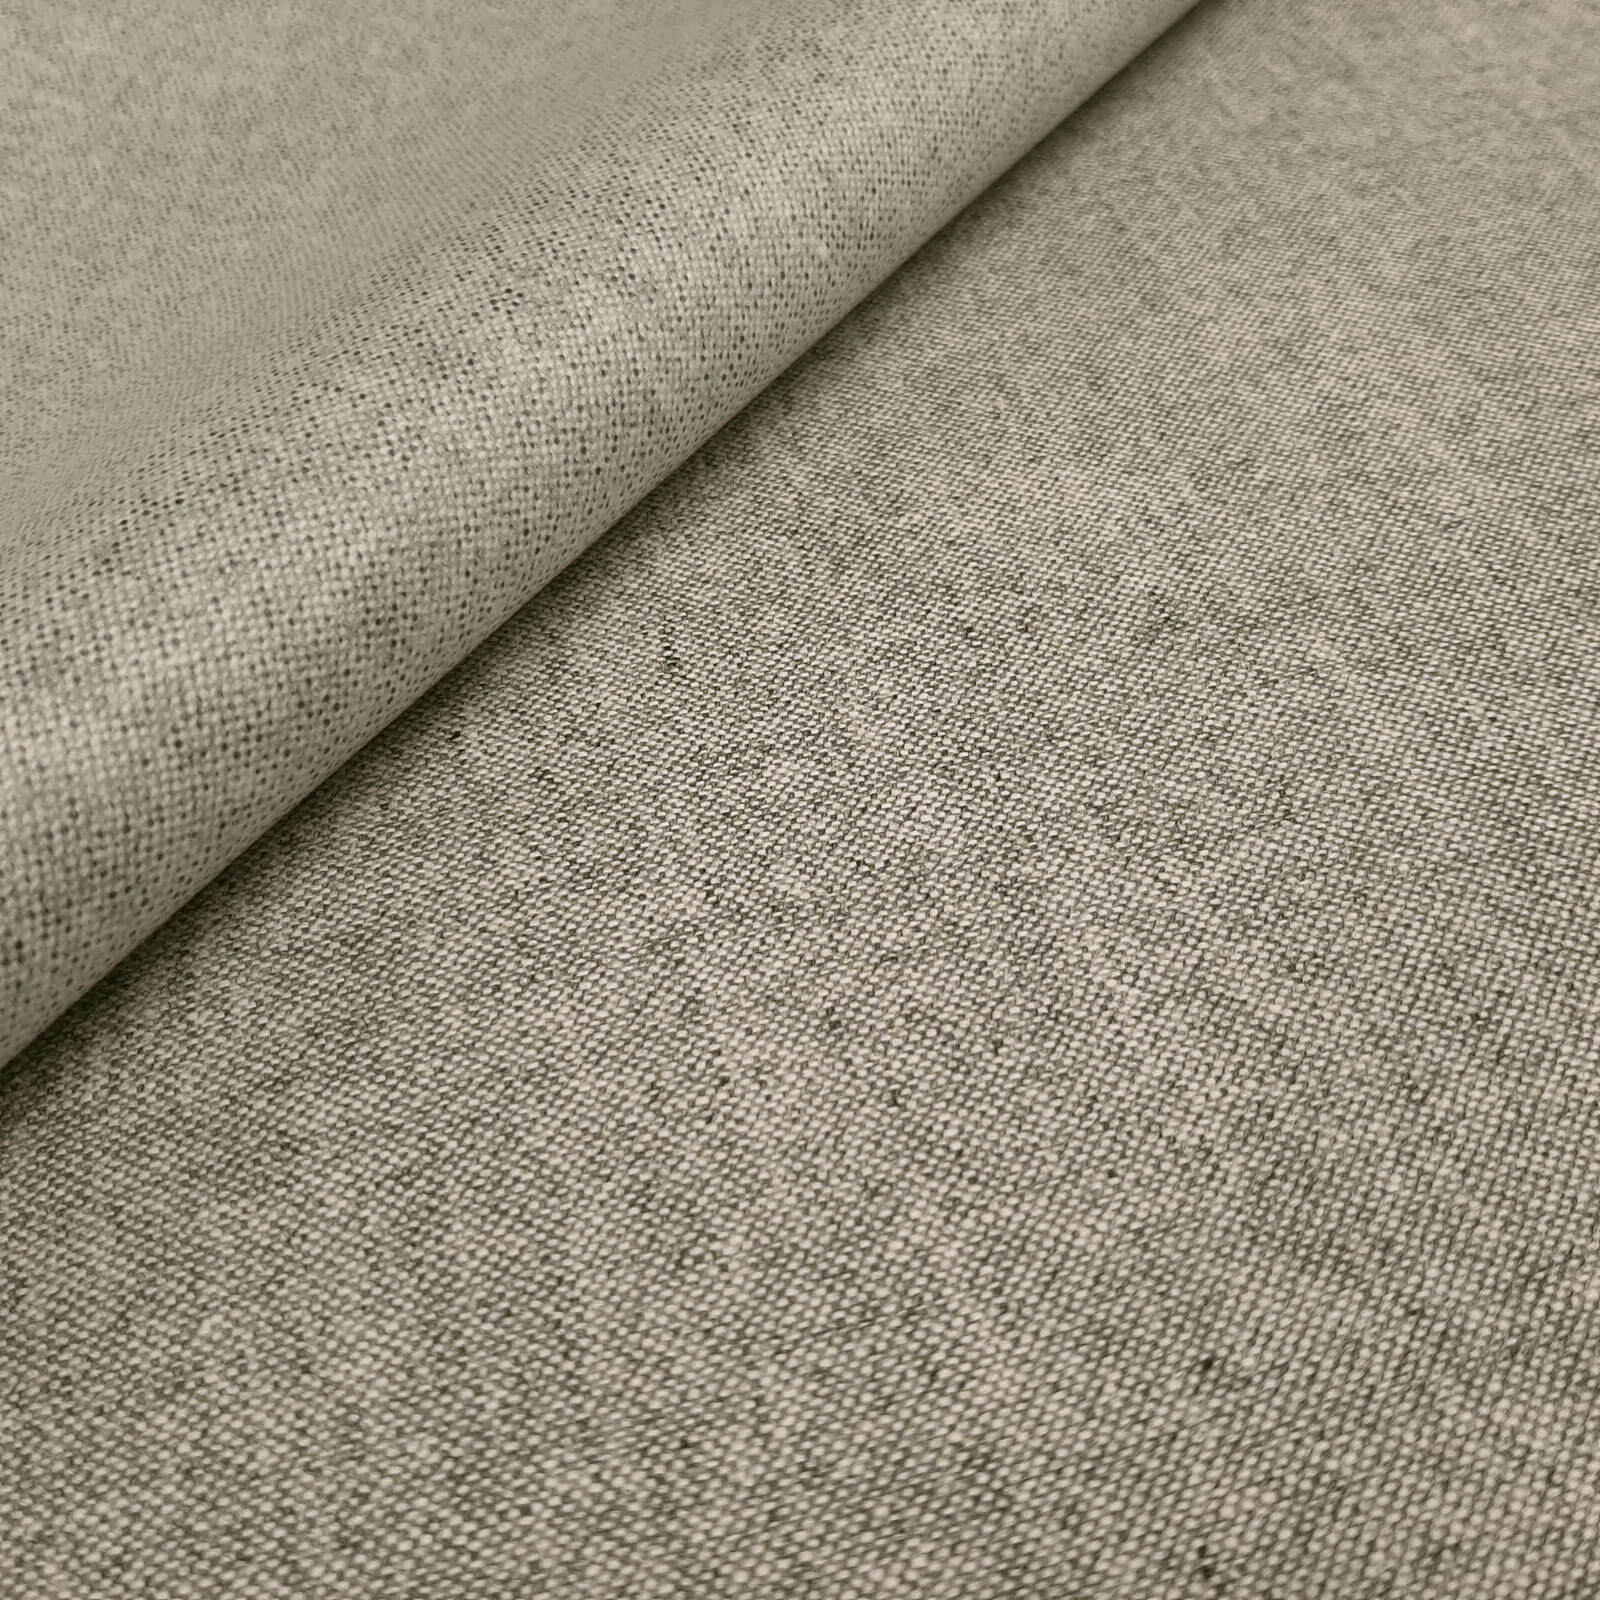 Konstantin - drap de laine imperméable avec membrane climatique - laminé extérieur - gris clair-mélange 